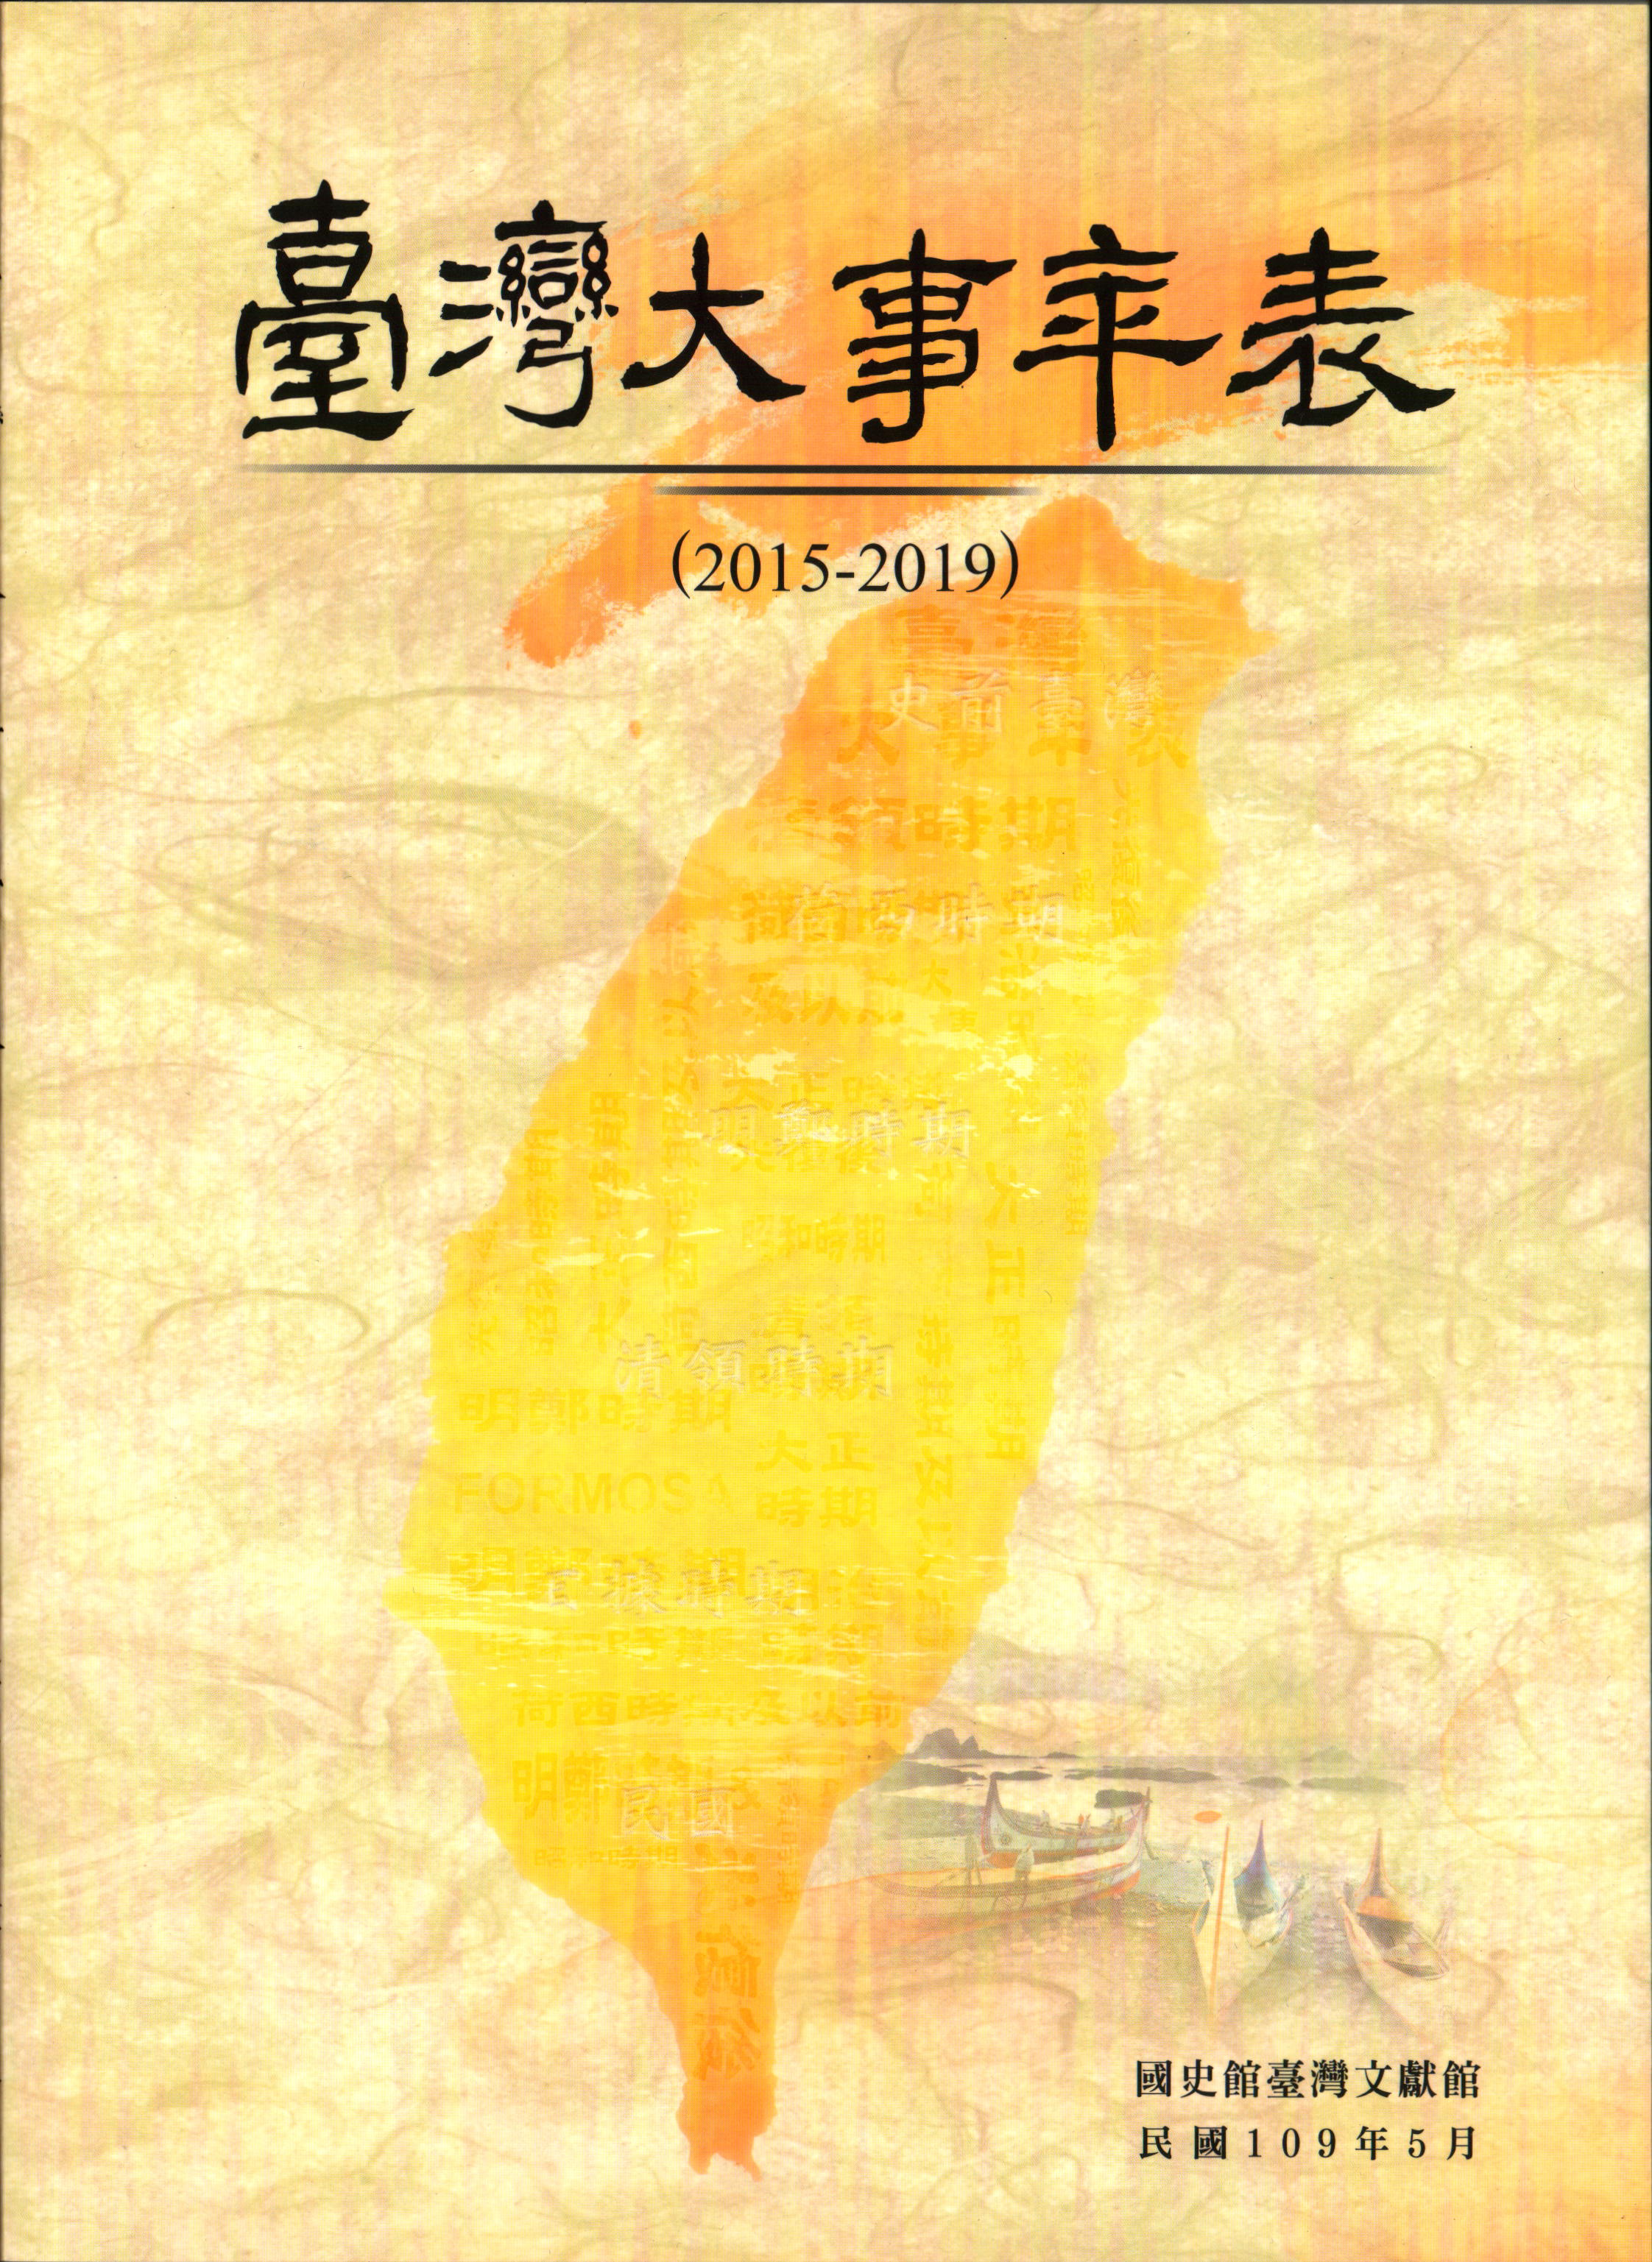 臺灣大事年表(2015-2019)  